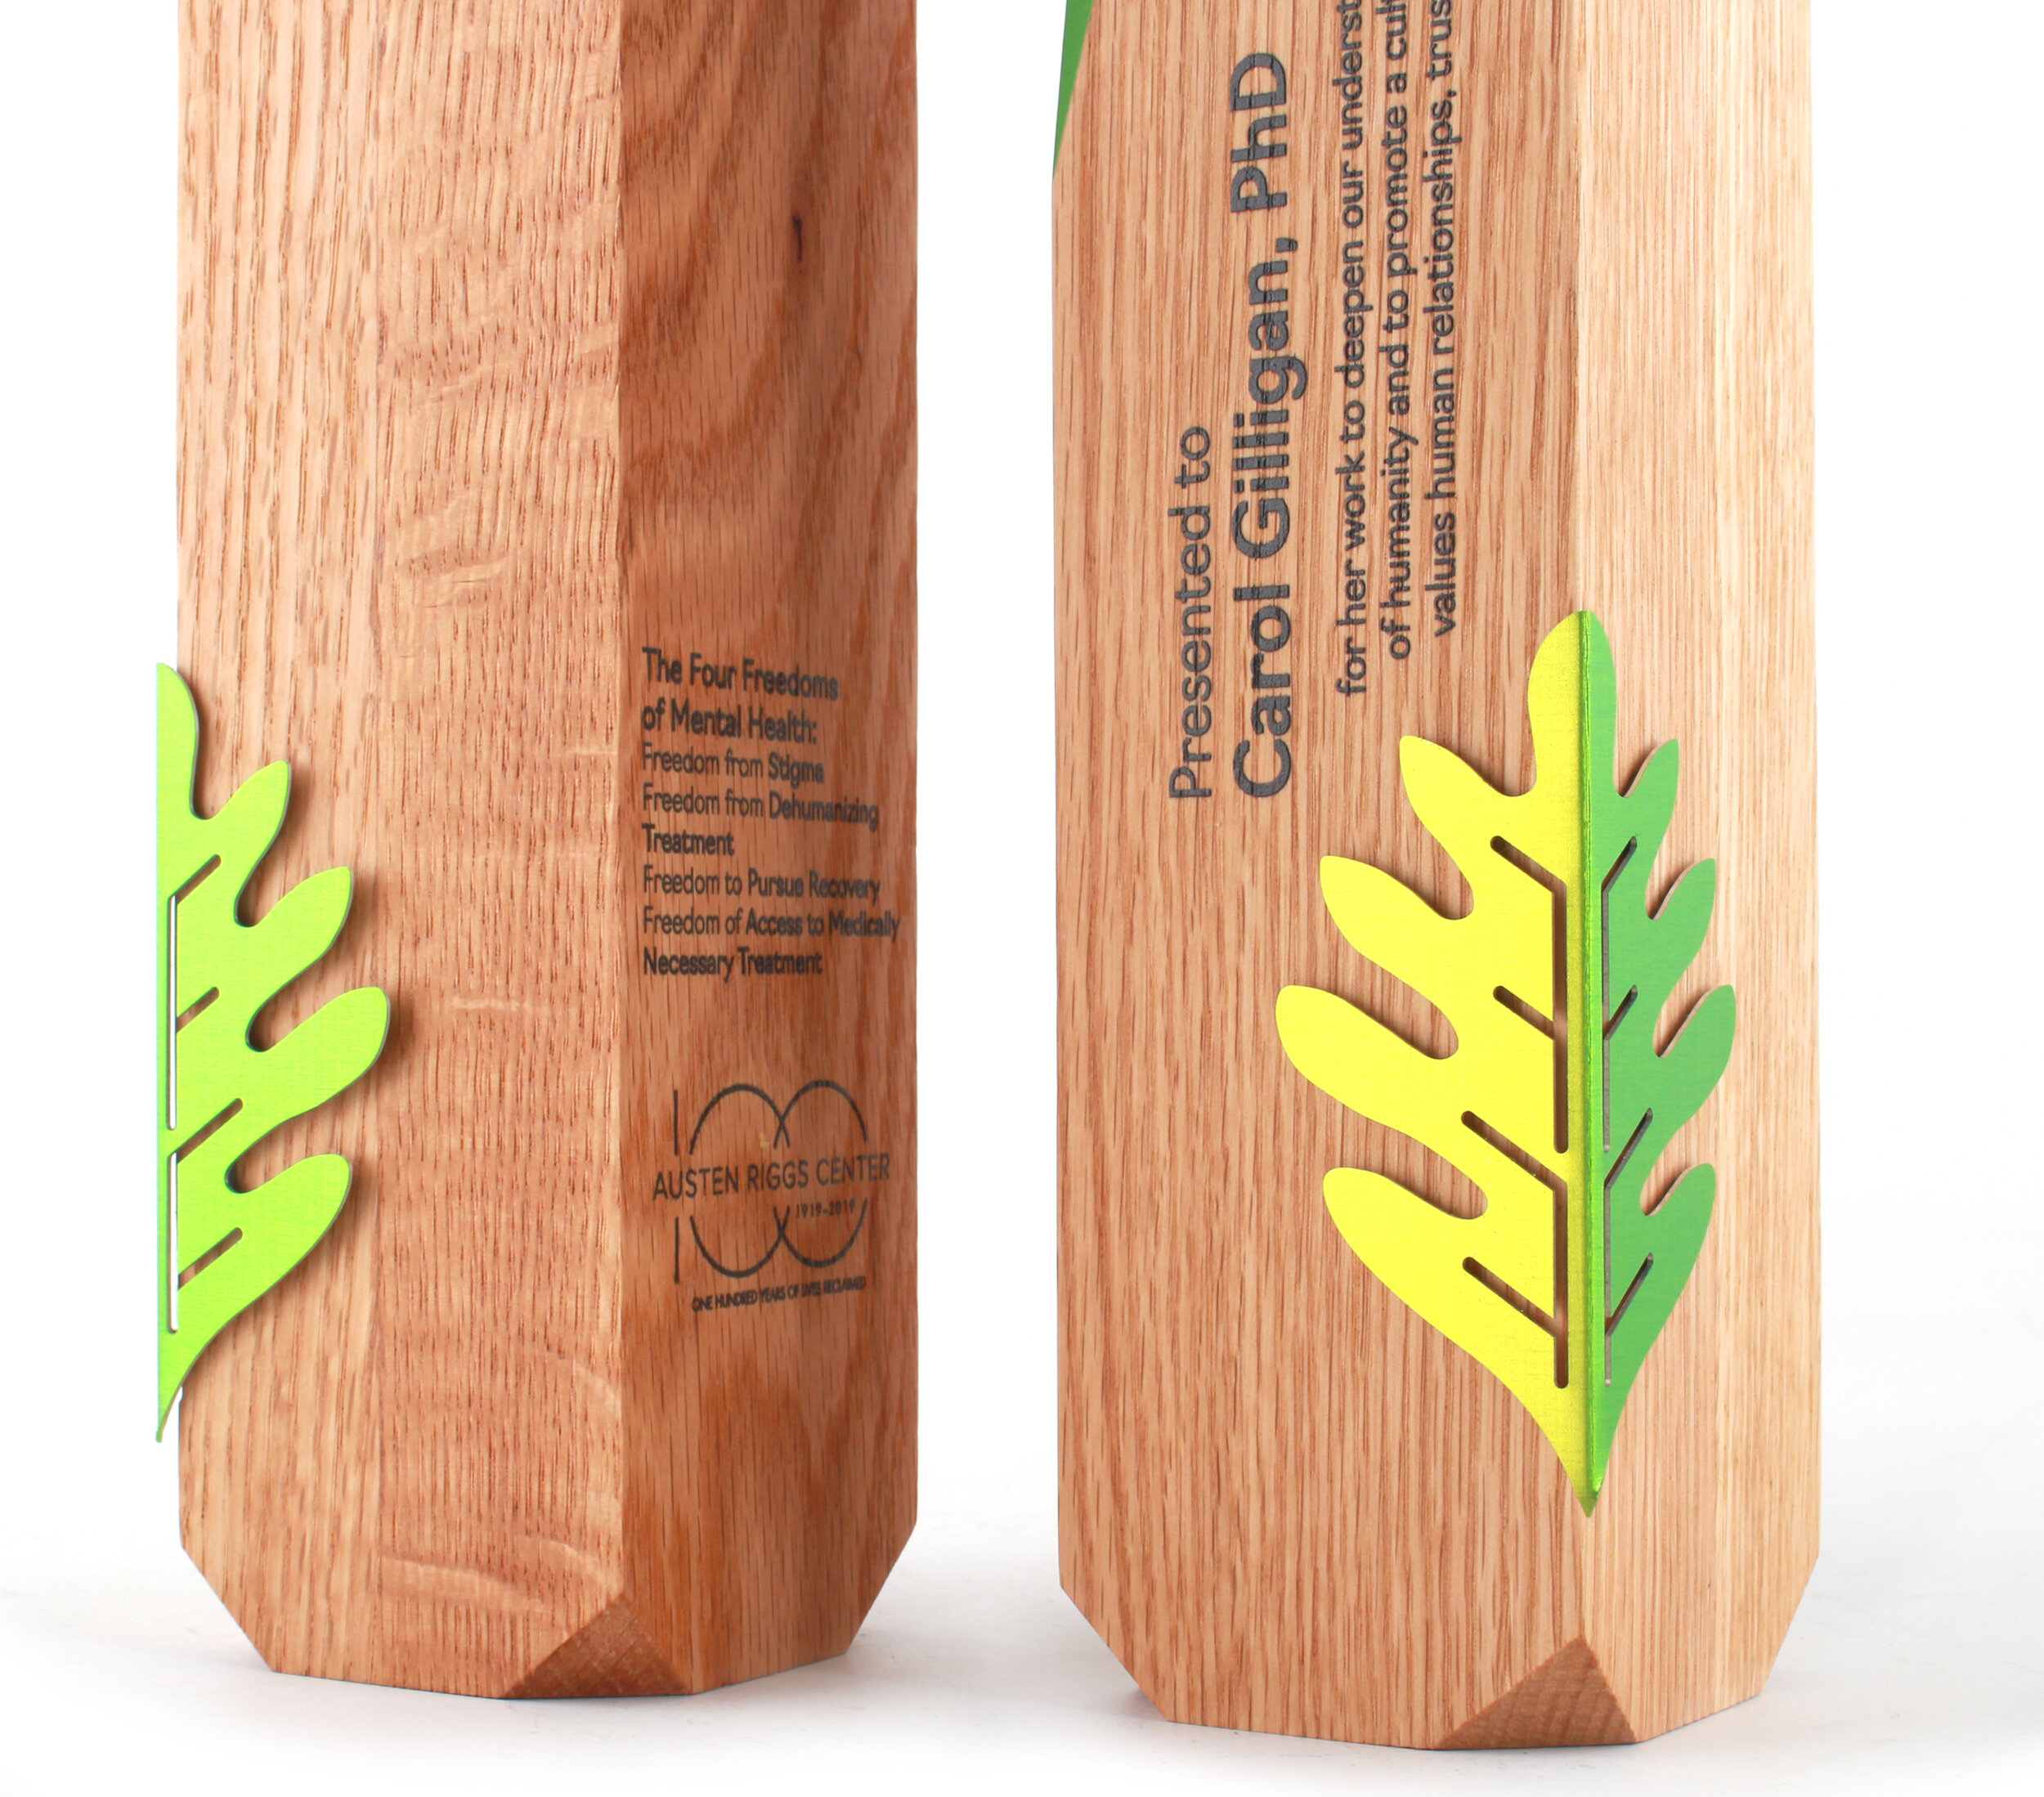 AustenRiggs solid oak hardwood custom awards trophies 2.jpg